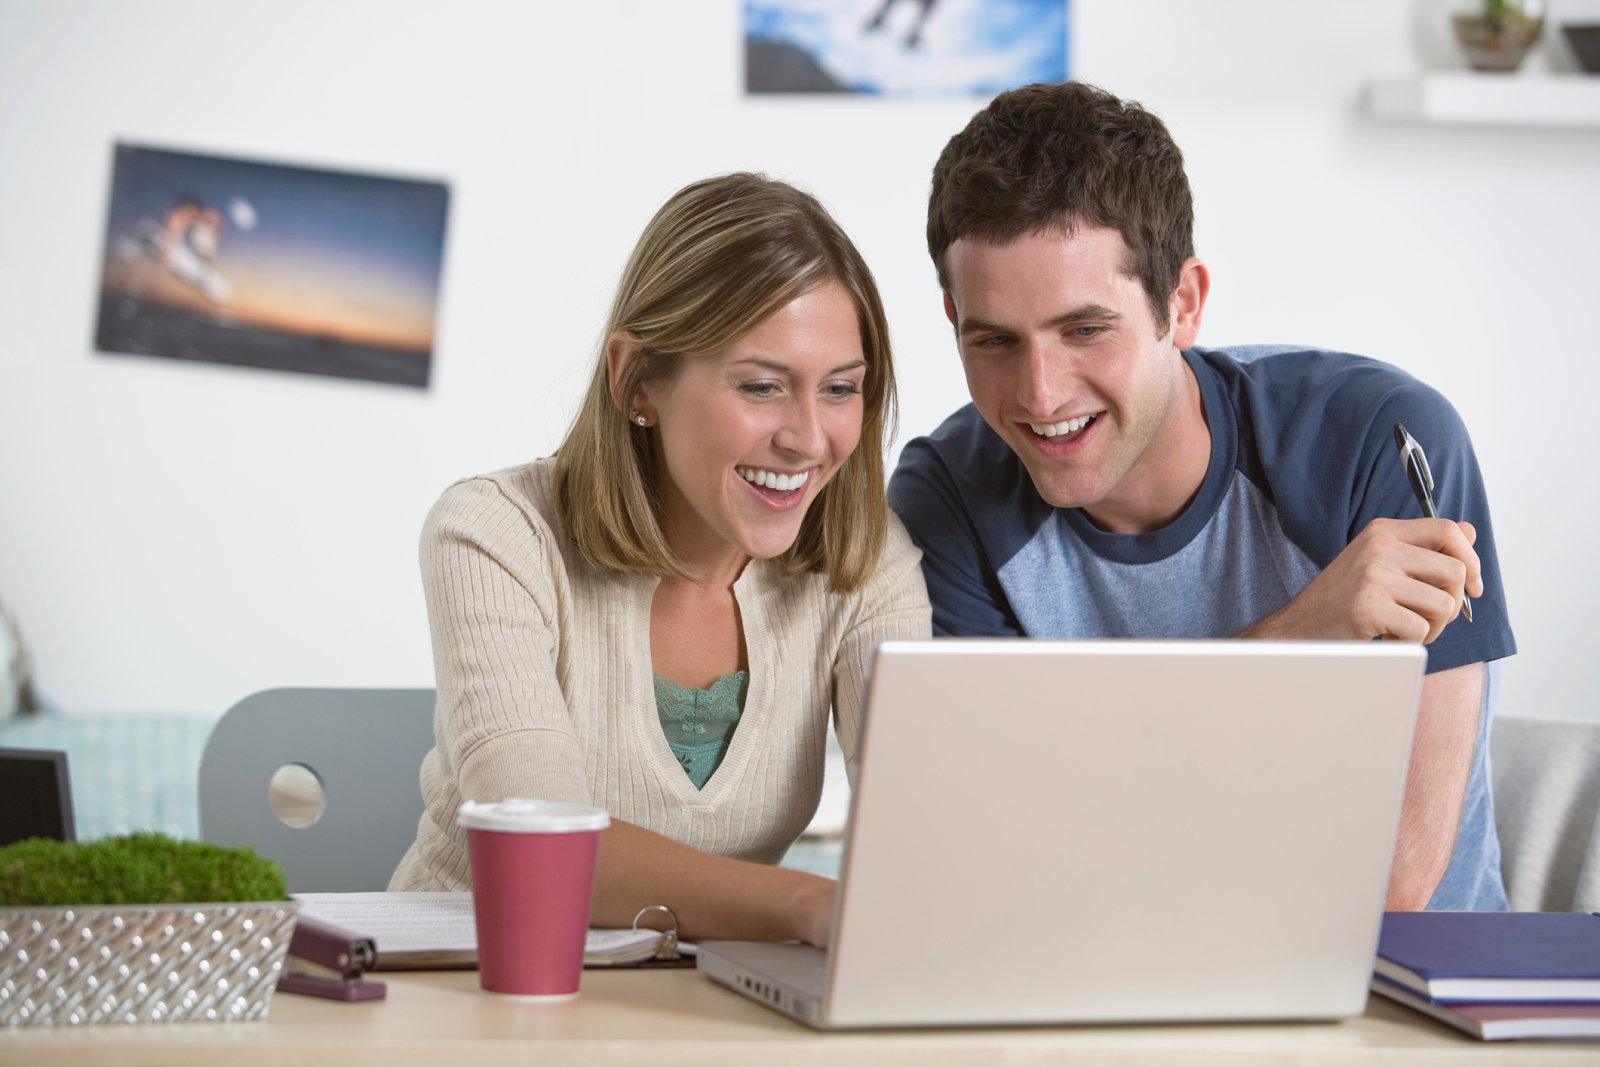 Пользователя в интернете можно. Два человека за компьютером. Молодые люди в интернете. Парочка за компьютером. Радостный человек у компьютера.